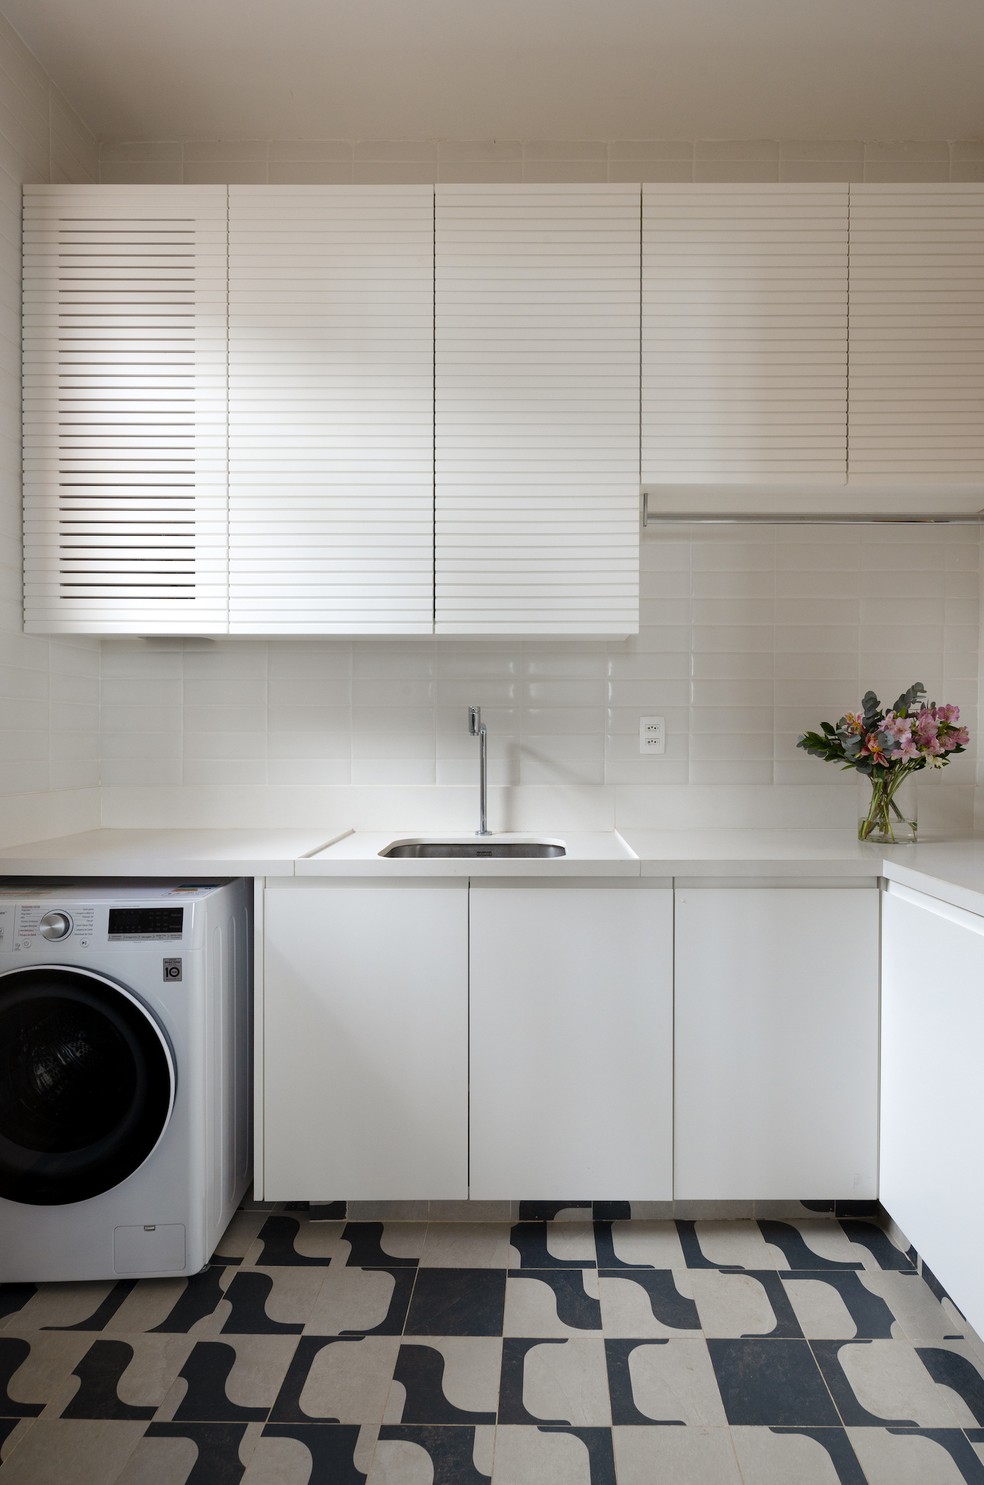 LAVANDERIA | O mesmo piso da Portobello foi utilizado na lavanderia, dando unidade para os ambientes — Foto: André Nazareth / Divulgação